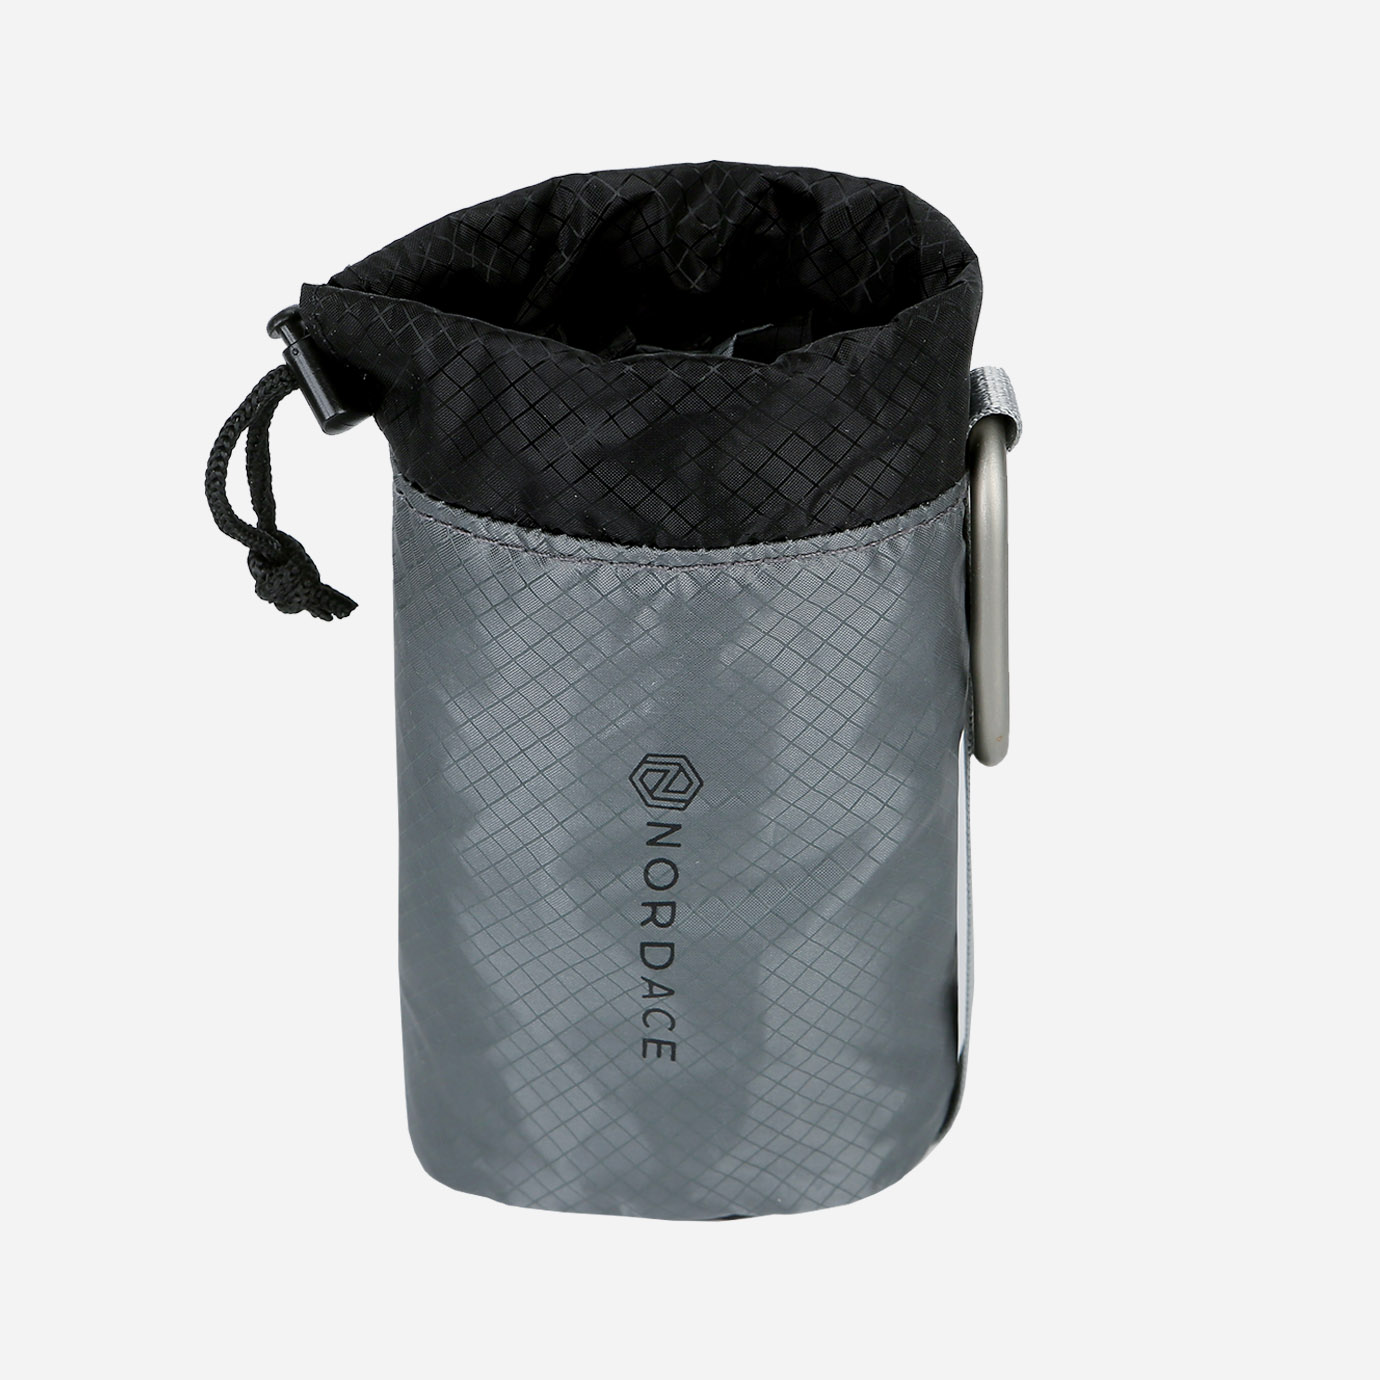 Netz-Sommertasche, faltbare Einkaufstasche, Nylon-transparente Tasche,  handgemachte minimalistische Tasche, leichte Einkaufstasche, Netz-Obsttasche,  Hand-Umhängetasche - .de